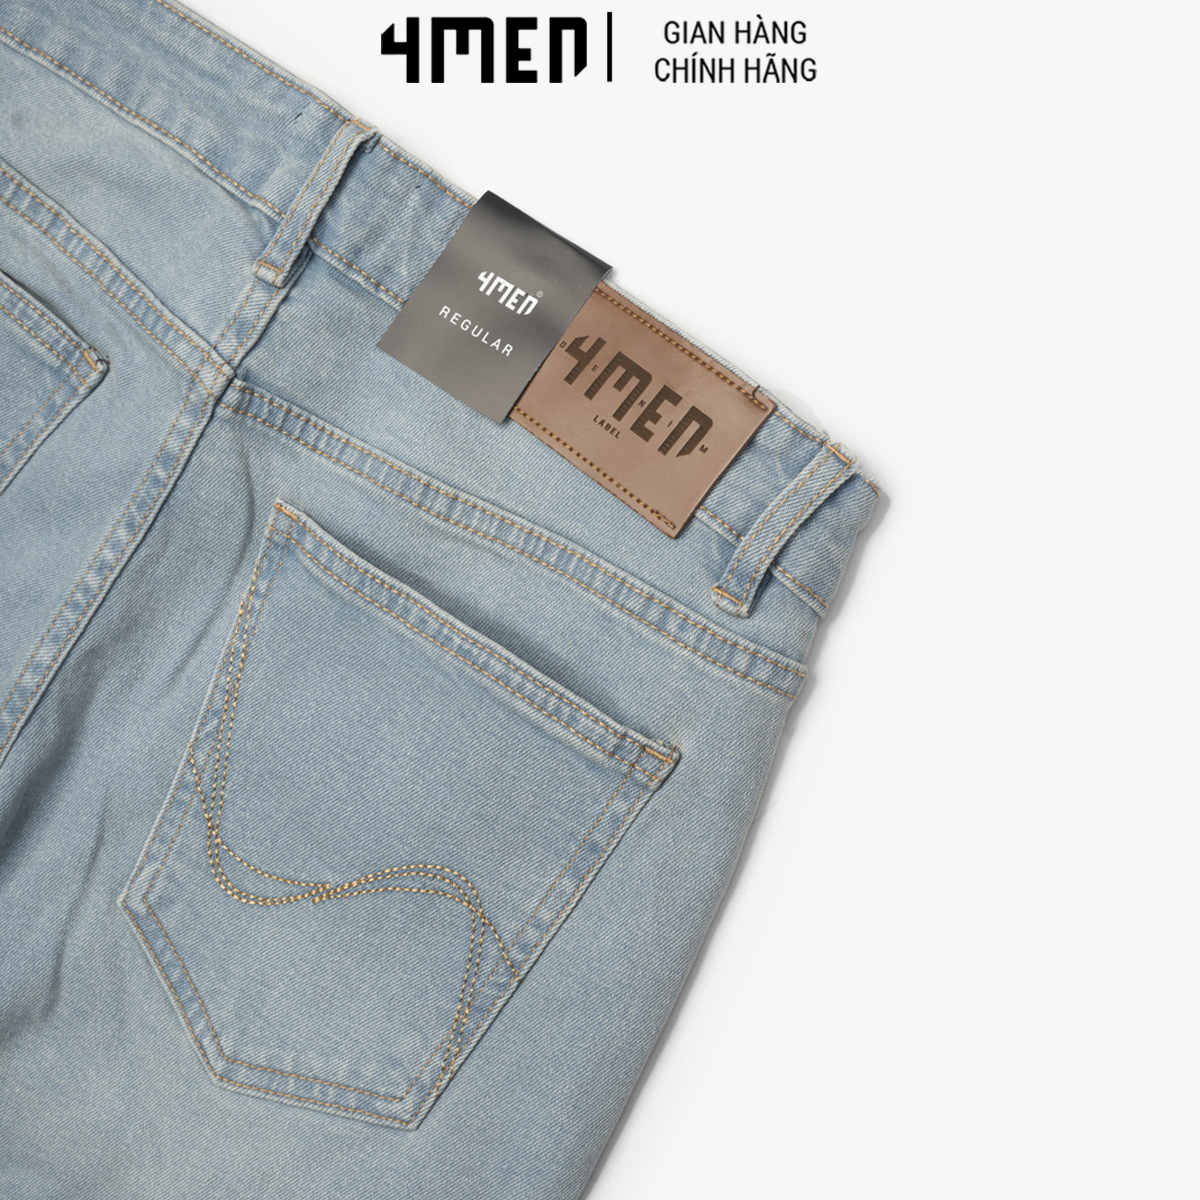 Quần Short Jeans Thêu Wave Form Regular 4MEN QS043 nam vải denim dày dặn, mềm mại, thoáng mát, co giãn, trẻ trung